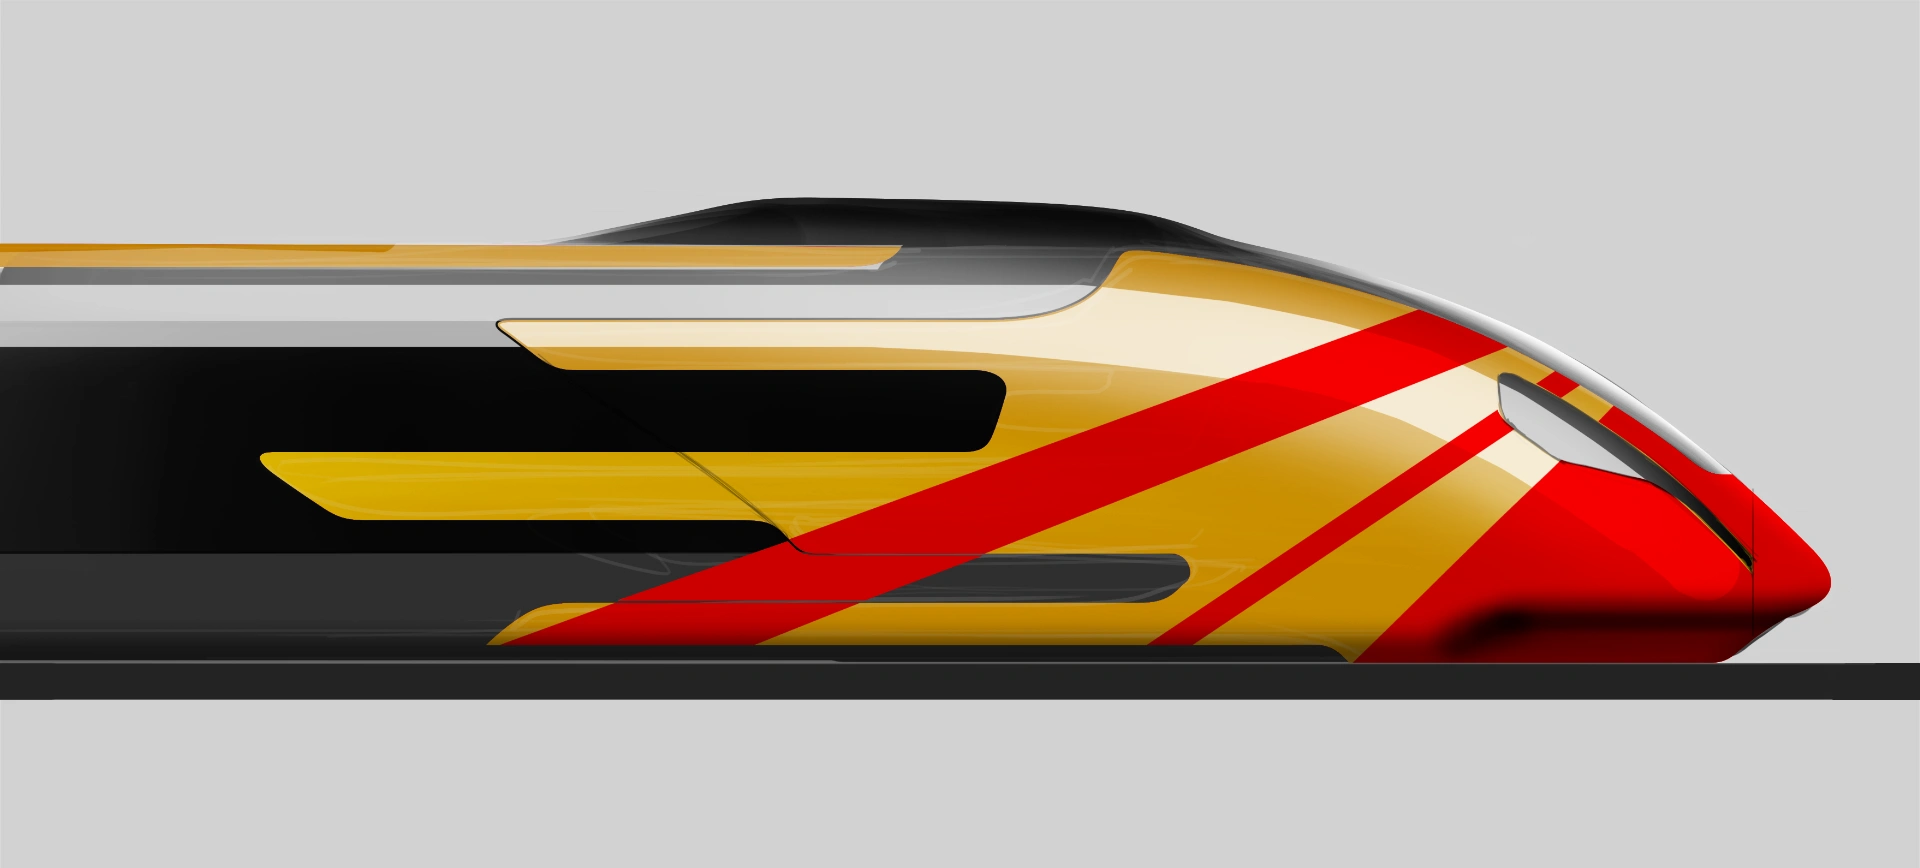 SpeedTrain Golden Dragon Concept Main Image_Design by Werkemotion